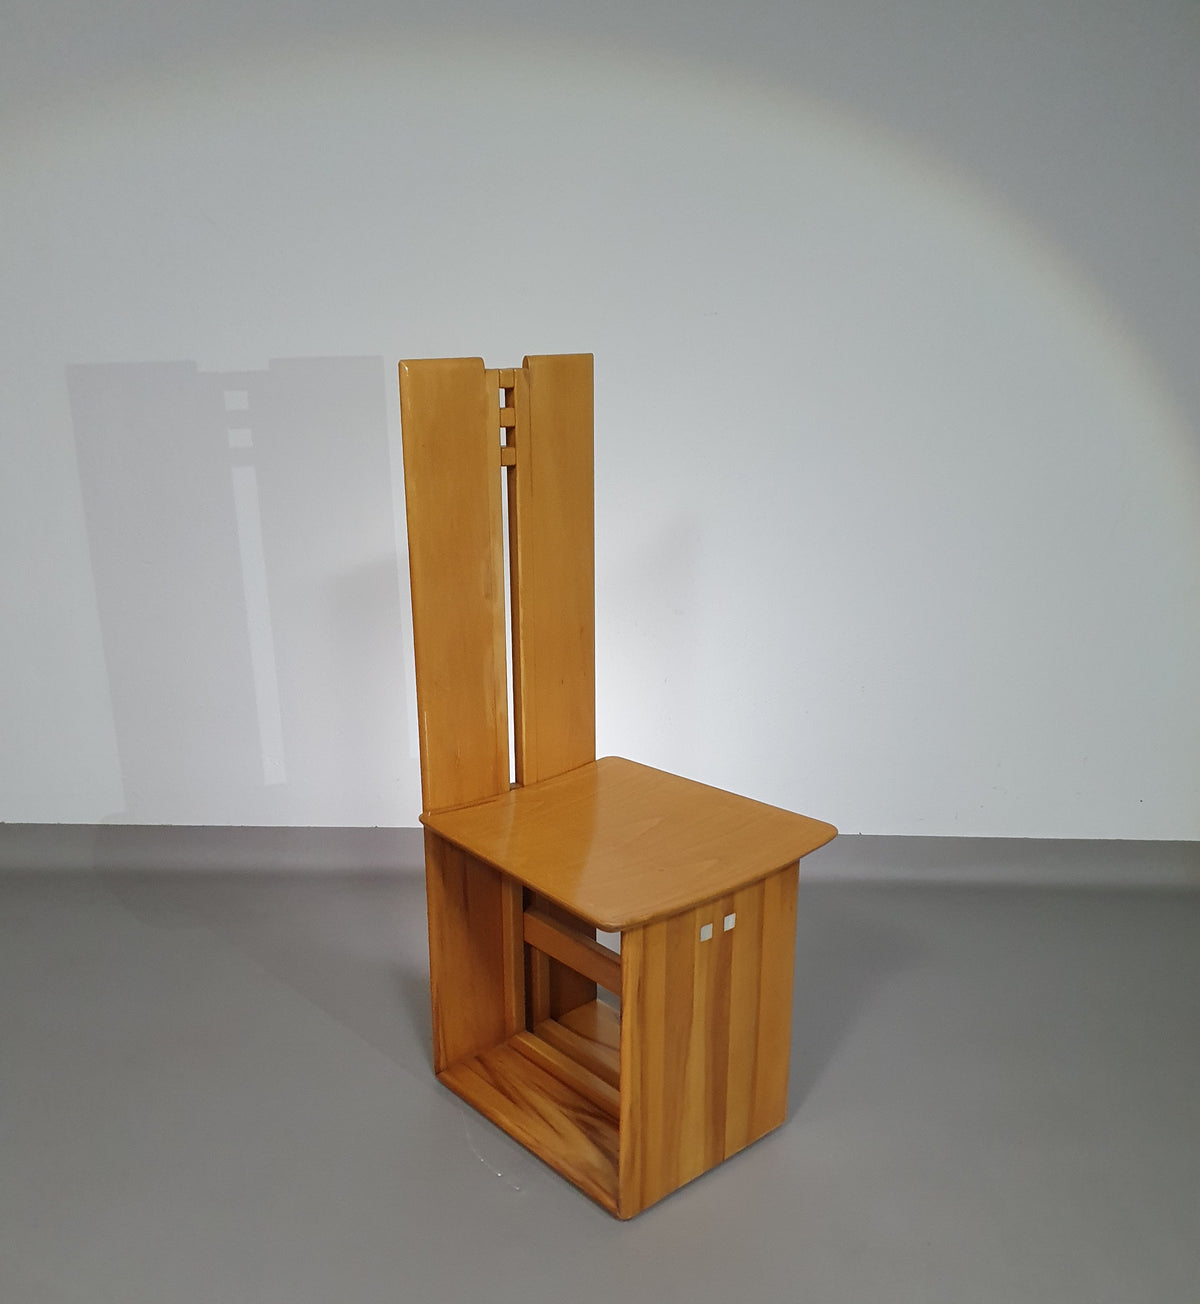 Mycene chair by Ferdinando Meccani for Meccani Arredamenti, 1978.